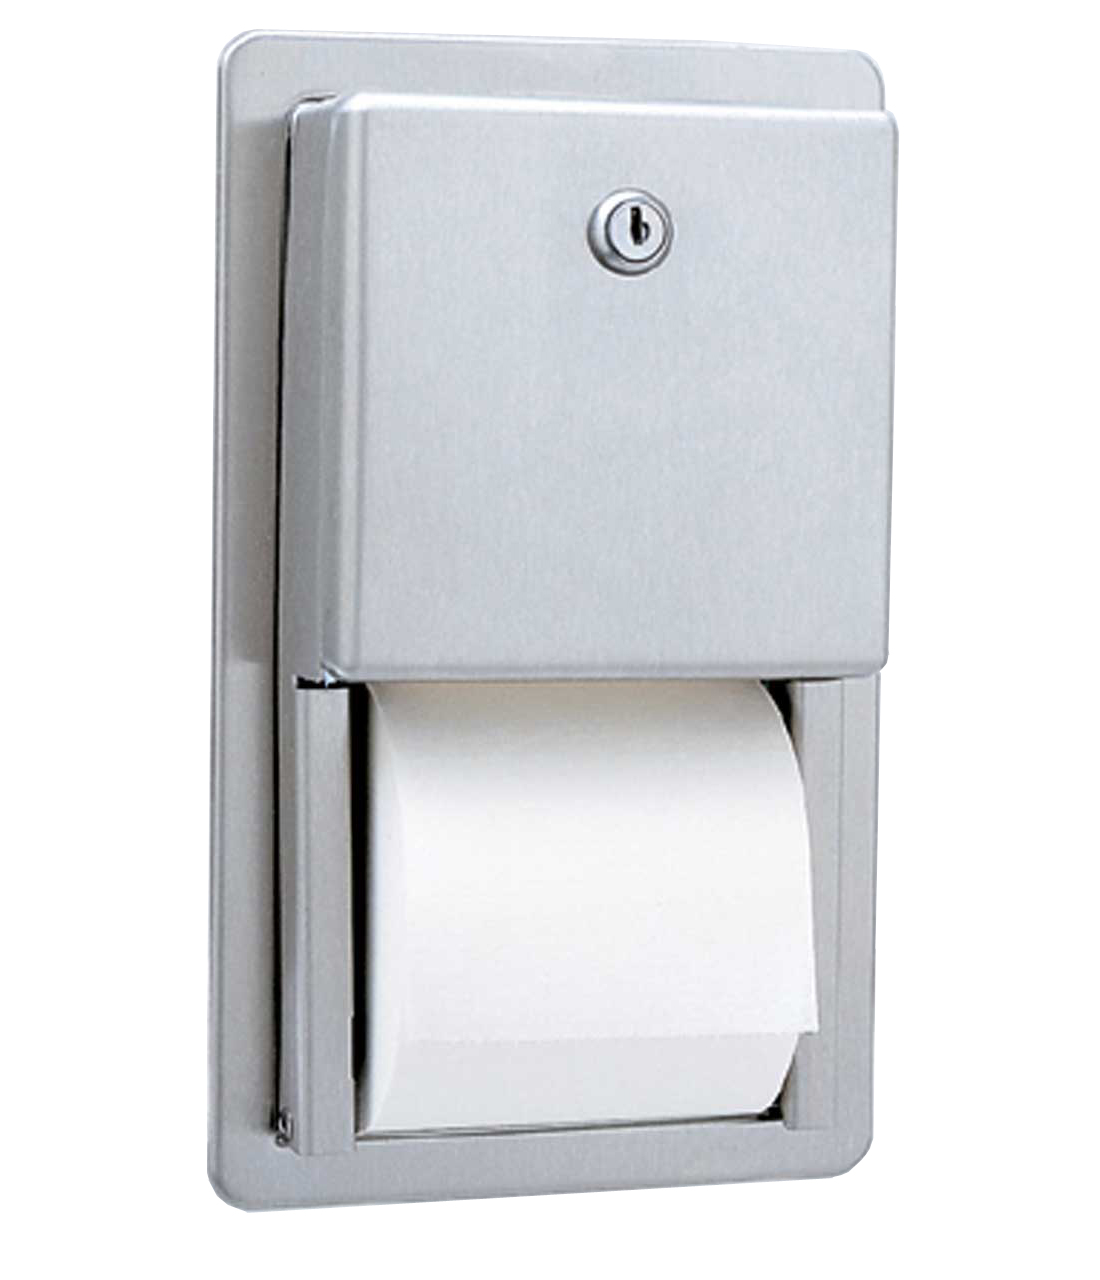 WC-Papierrollenhalter für mehrere Rollen, Wandeinbau Image